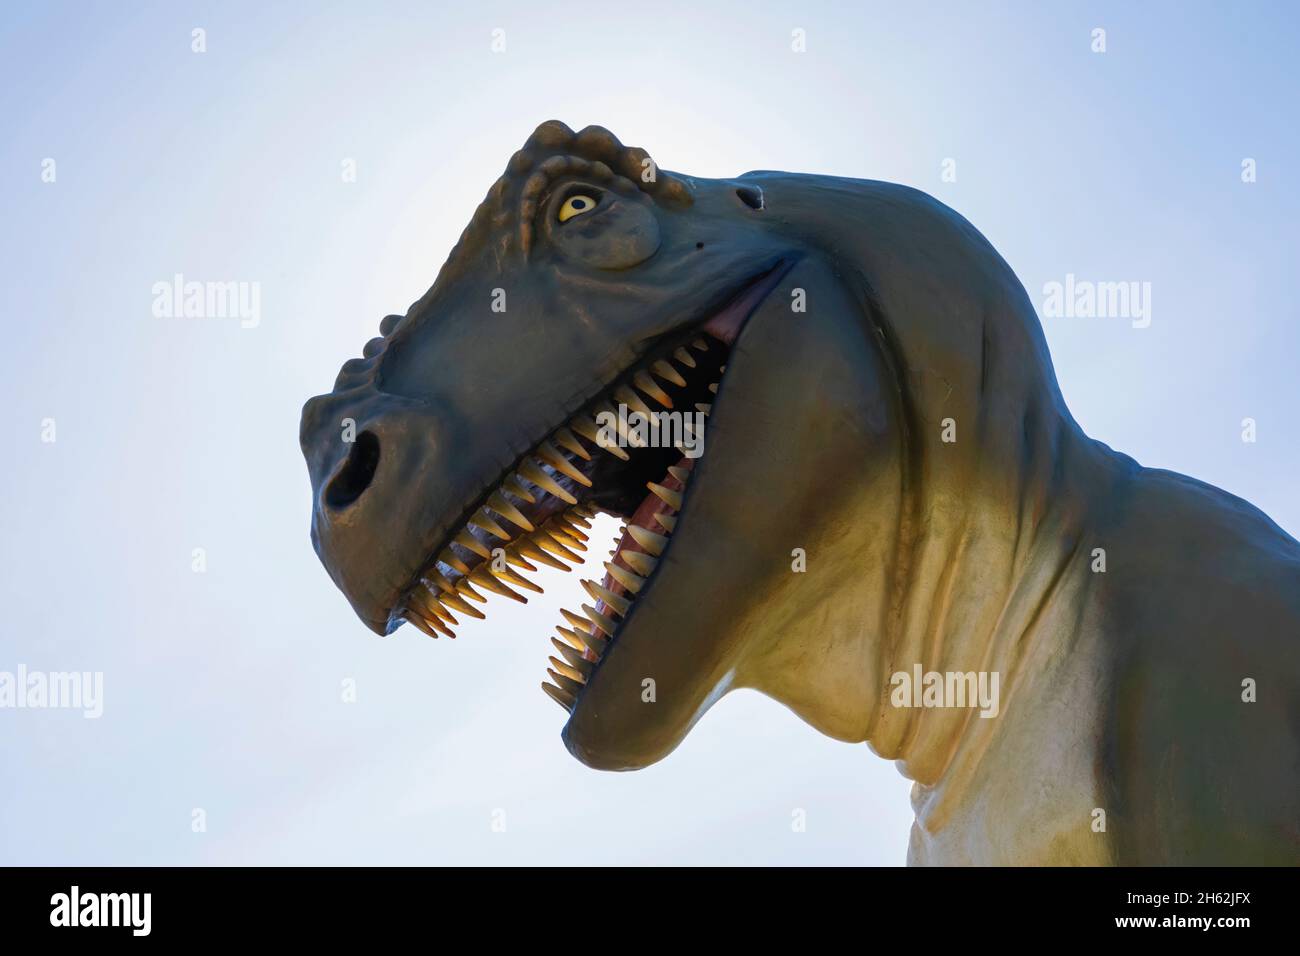 england,isle of wight,the needles landmark attraction,statue of tyrannosaurus-rex head Stock Photo